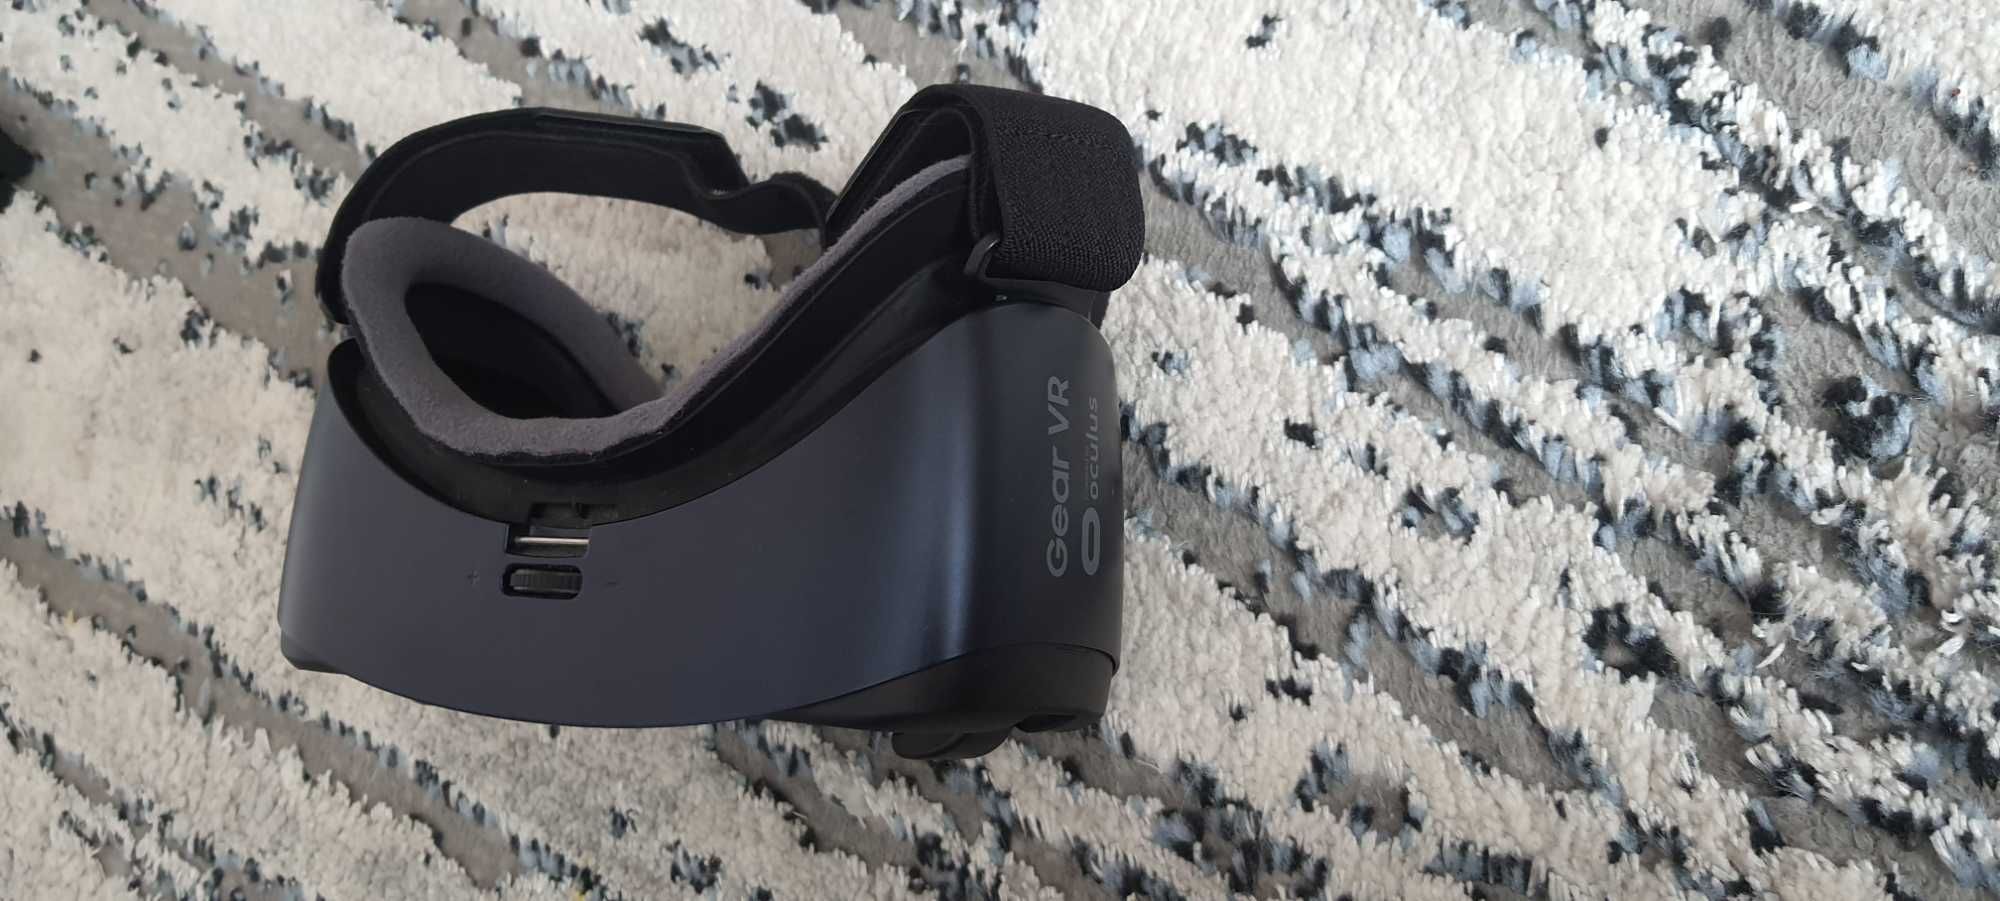 GEAR VR Oculus sprawne